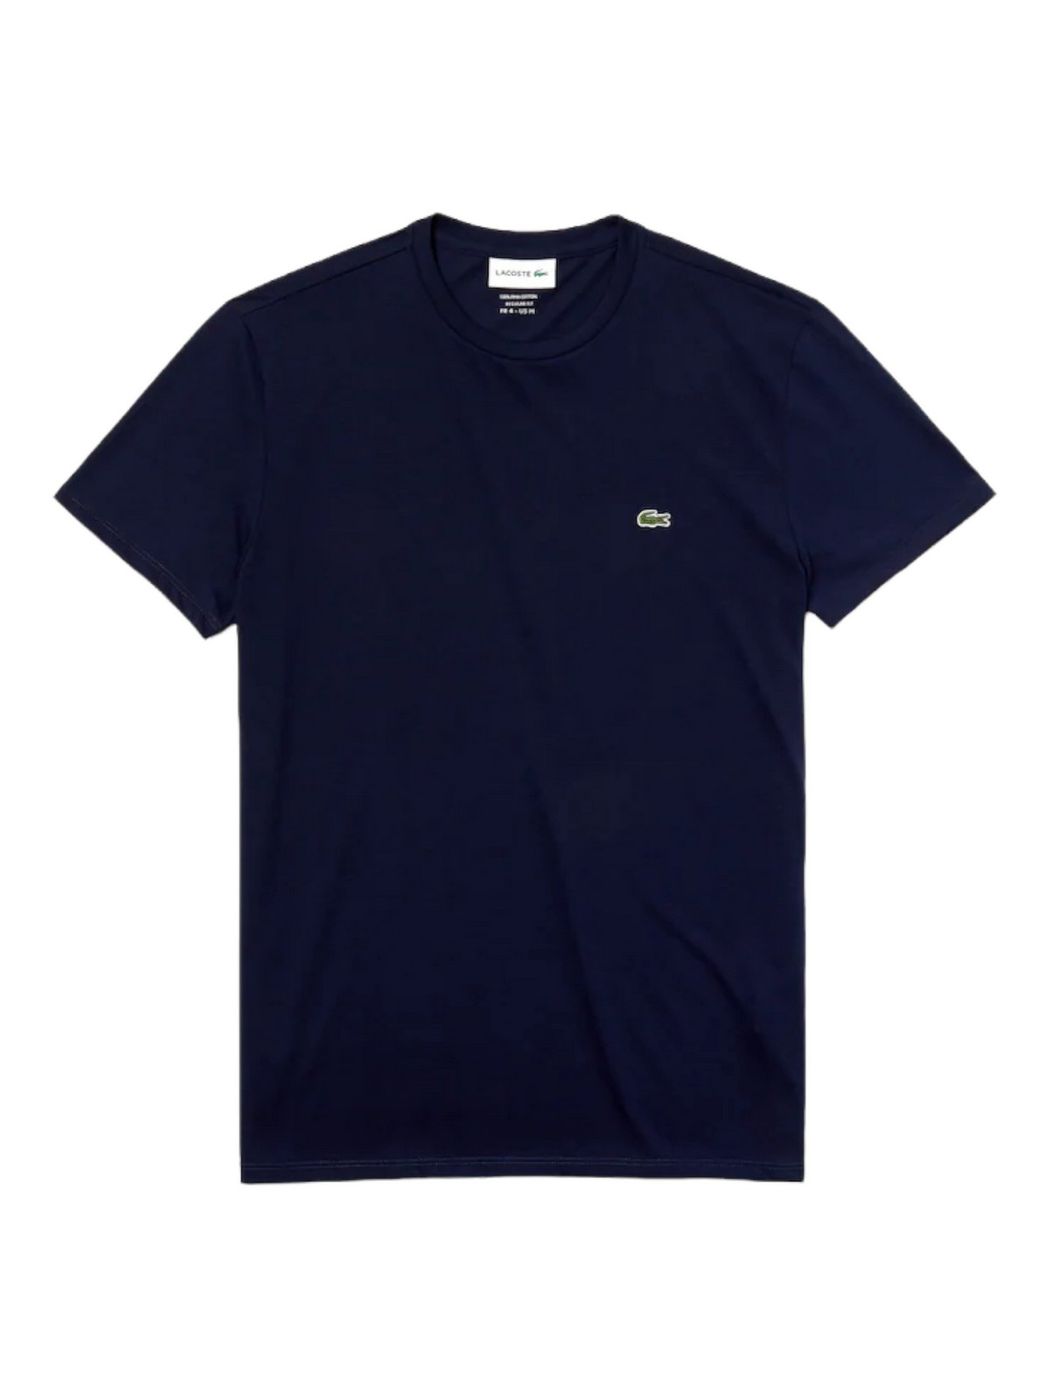 LACOSTE T-Shirt et Polo Hommes TH6709 166 Bleu